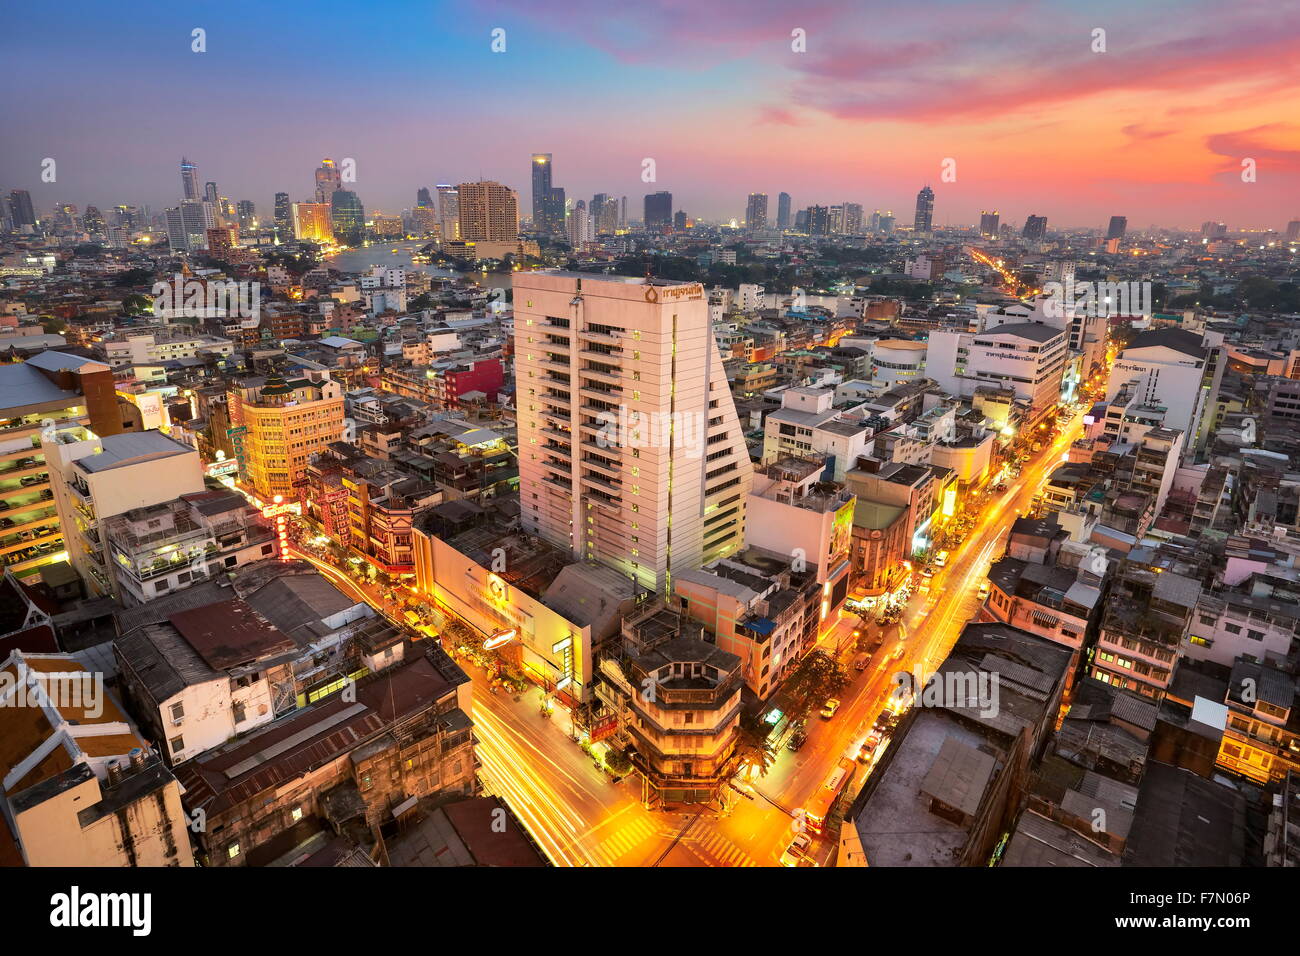 Bangkok city, view from The Grand China Princess Hotel at sunset, Bangkok, Thailand Stock Photo